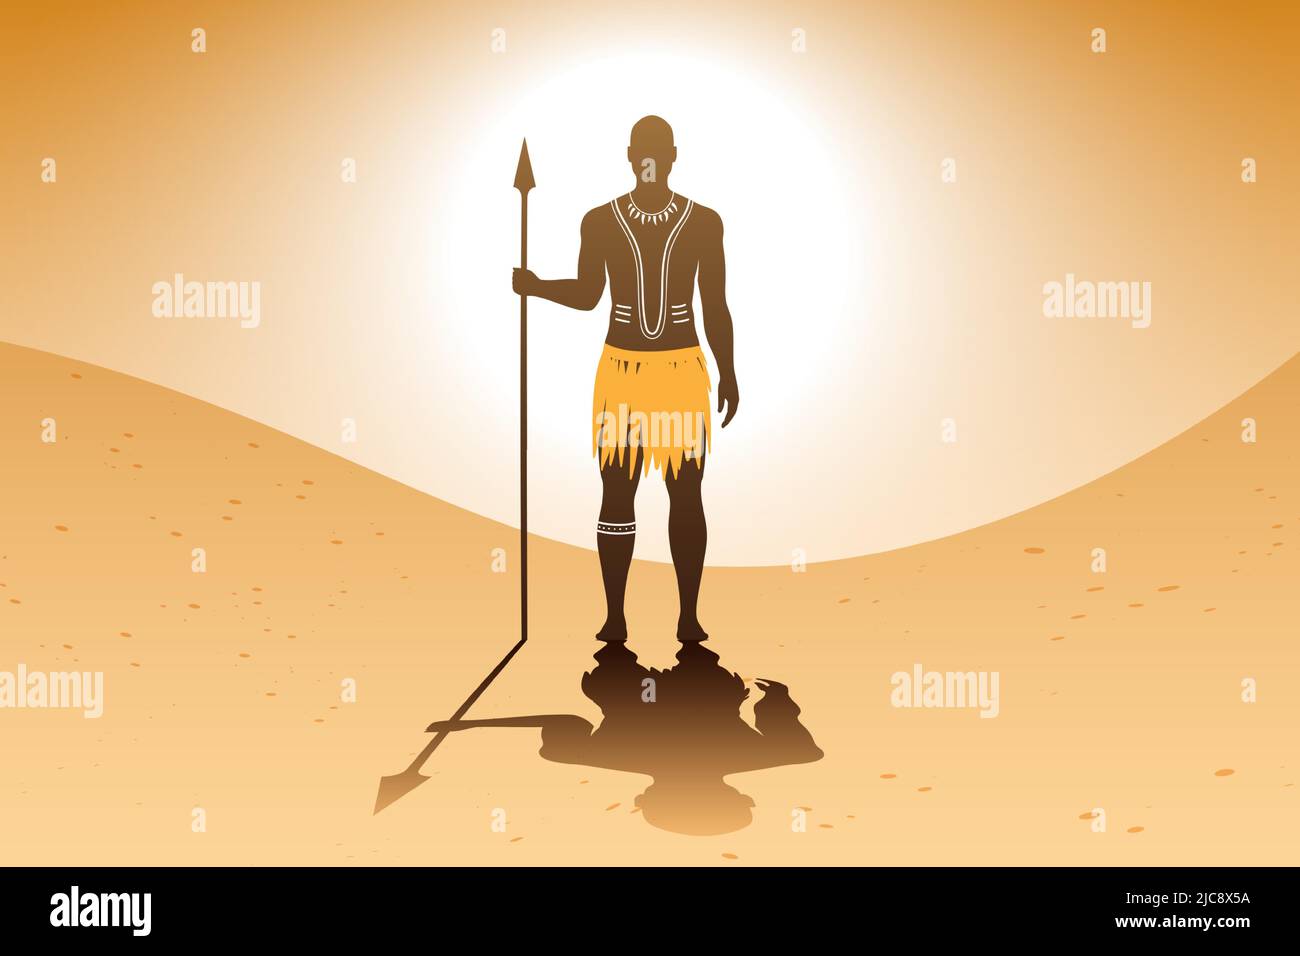 Uomo aborigeno africano con arte del corpo e vestito etnico tradizionali, in piedi su uno sfondo di paesaggio sabbioso, mentre tiene una lancia. Illustrazione vettoriale del guerriero della tribù Massai. Illustrazione Vettoriale